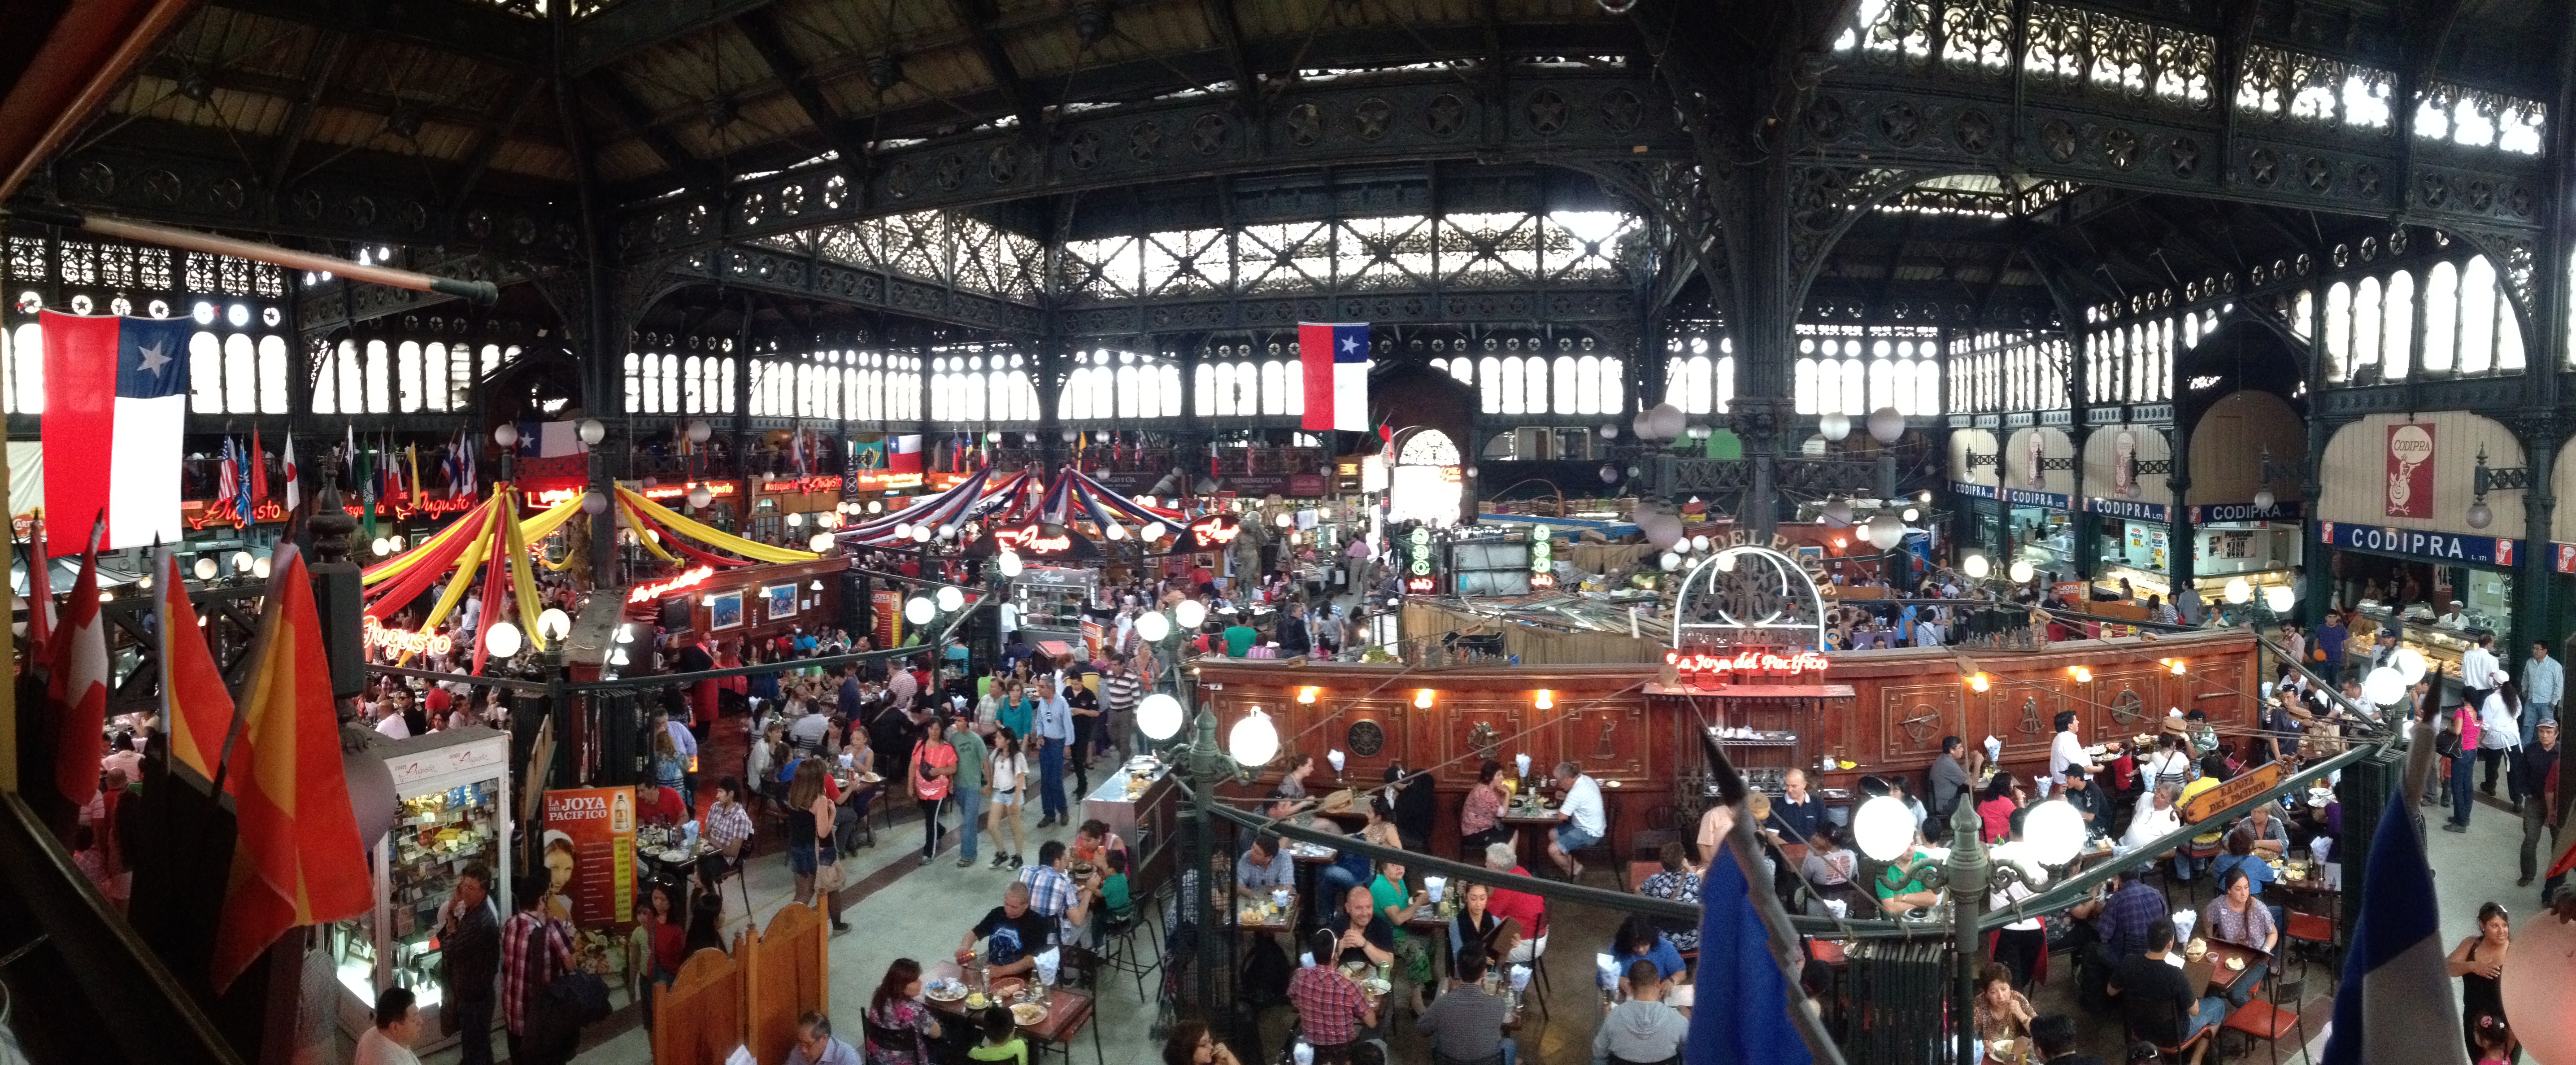 Mercado_Central_de_Santiago_(interior)_-_panoramio